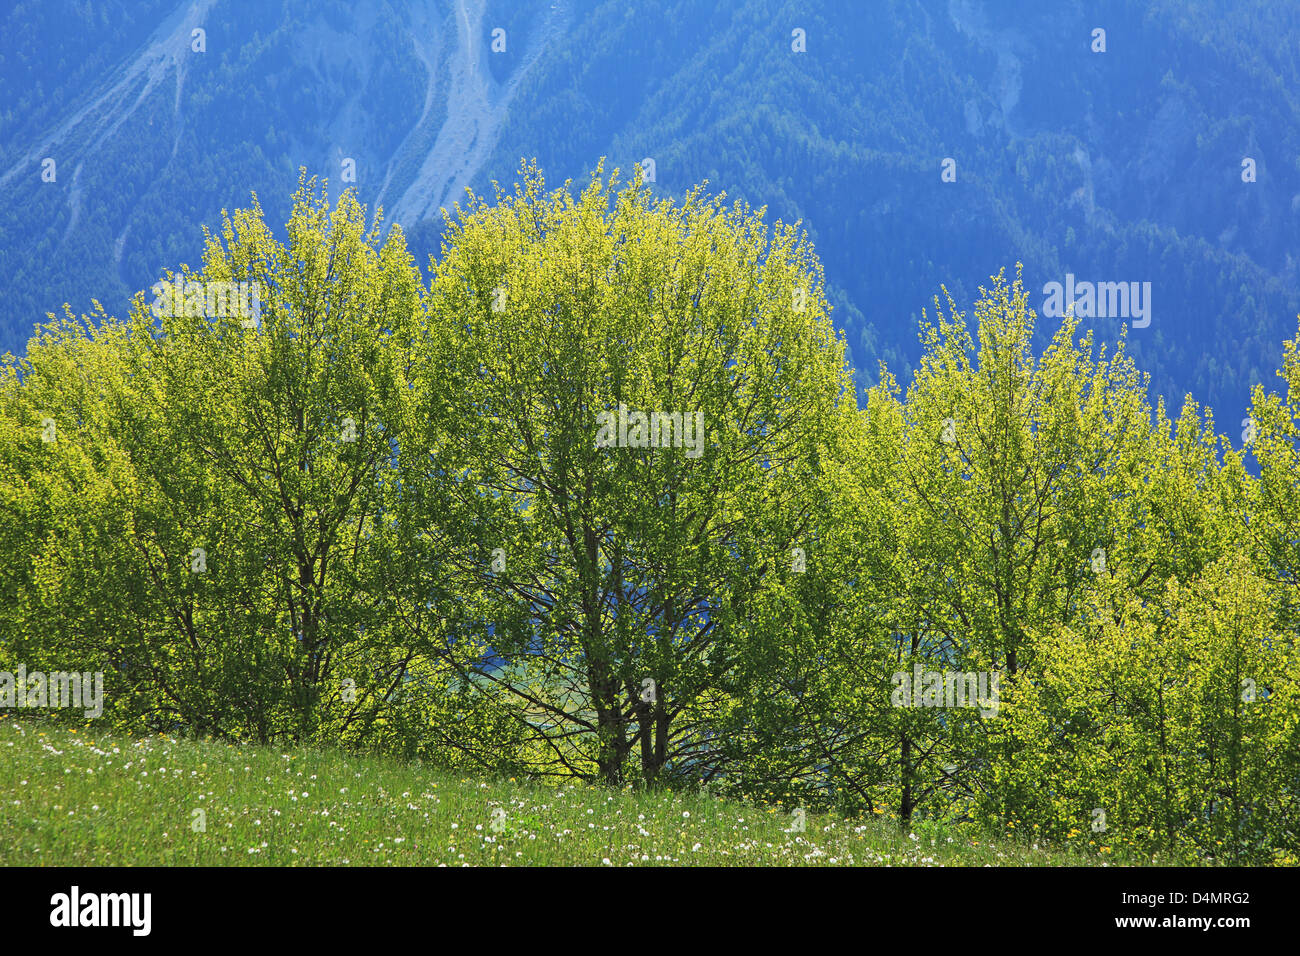 Switzerland, Canton Graubünden, fresh green Stock Photo